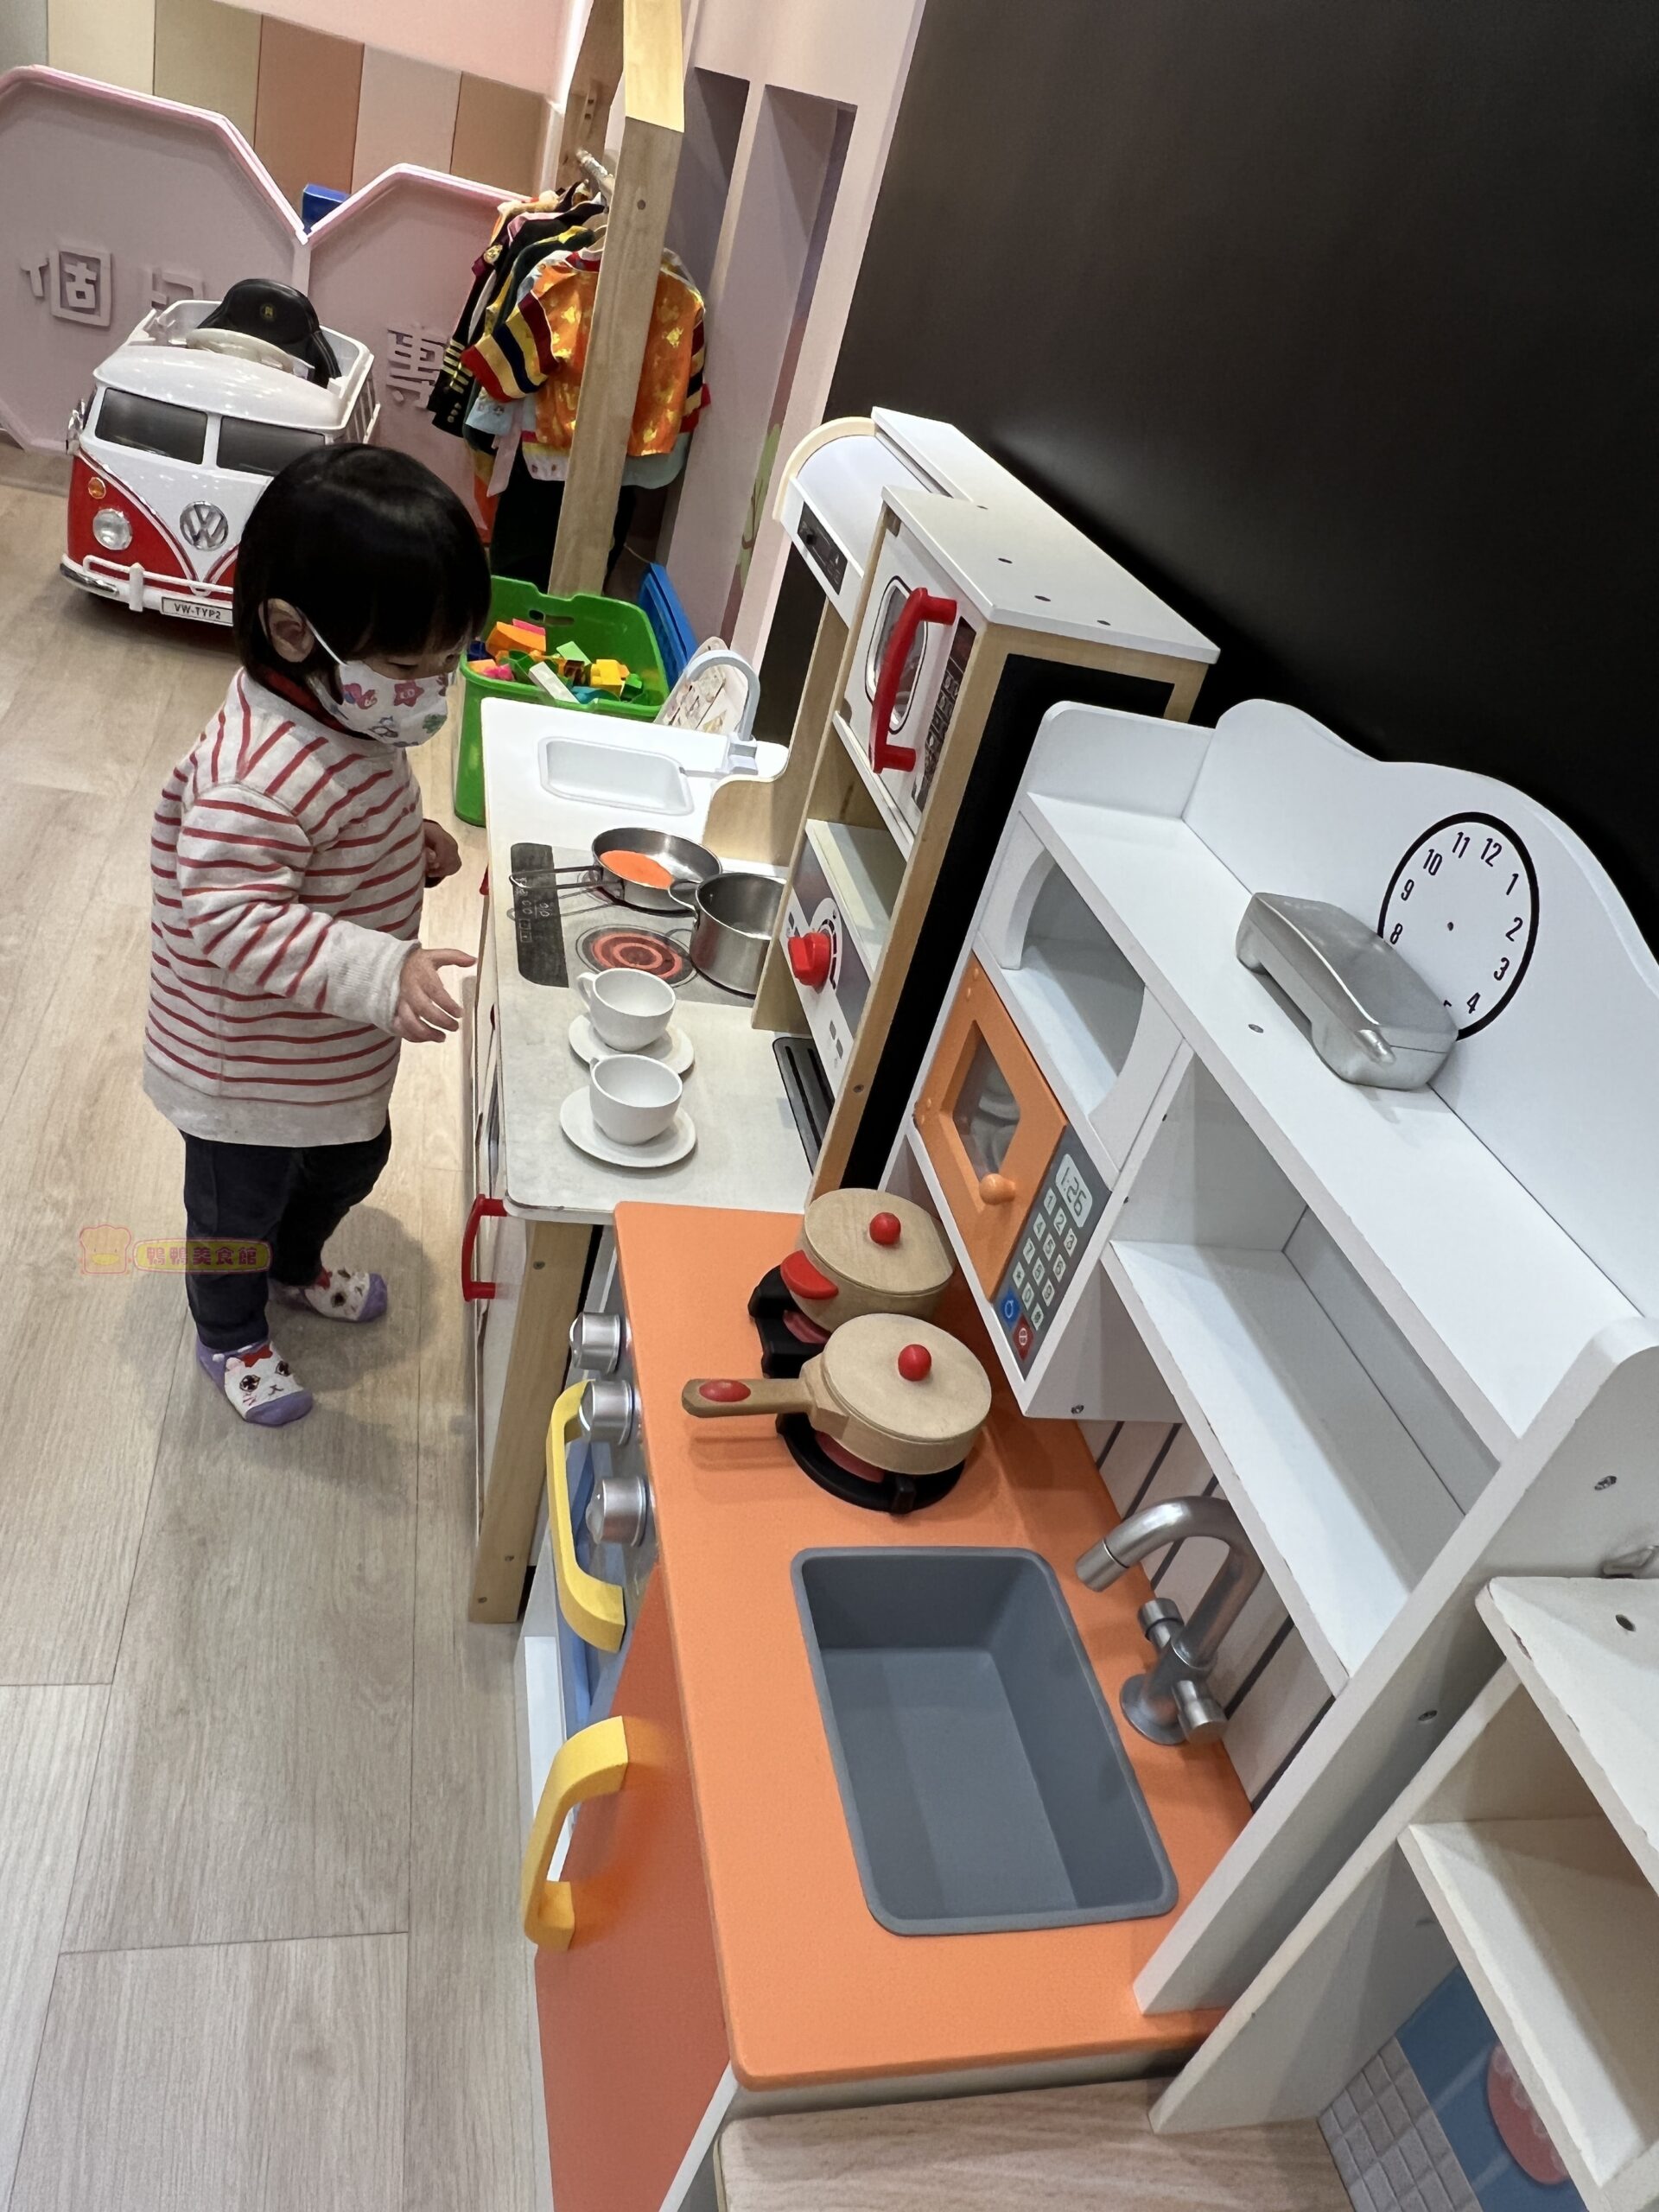 wifi提供,免費wifi,兒童遊戲區,包場,包廂,台北親子餐廳,廚房玩具,抓周,沙坑,親子雨天備案,親子餐廳,變裝